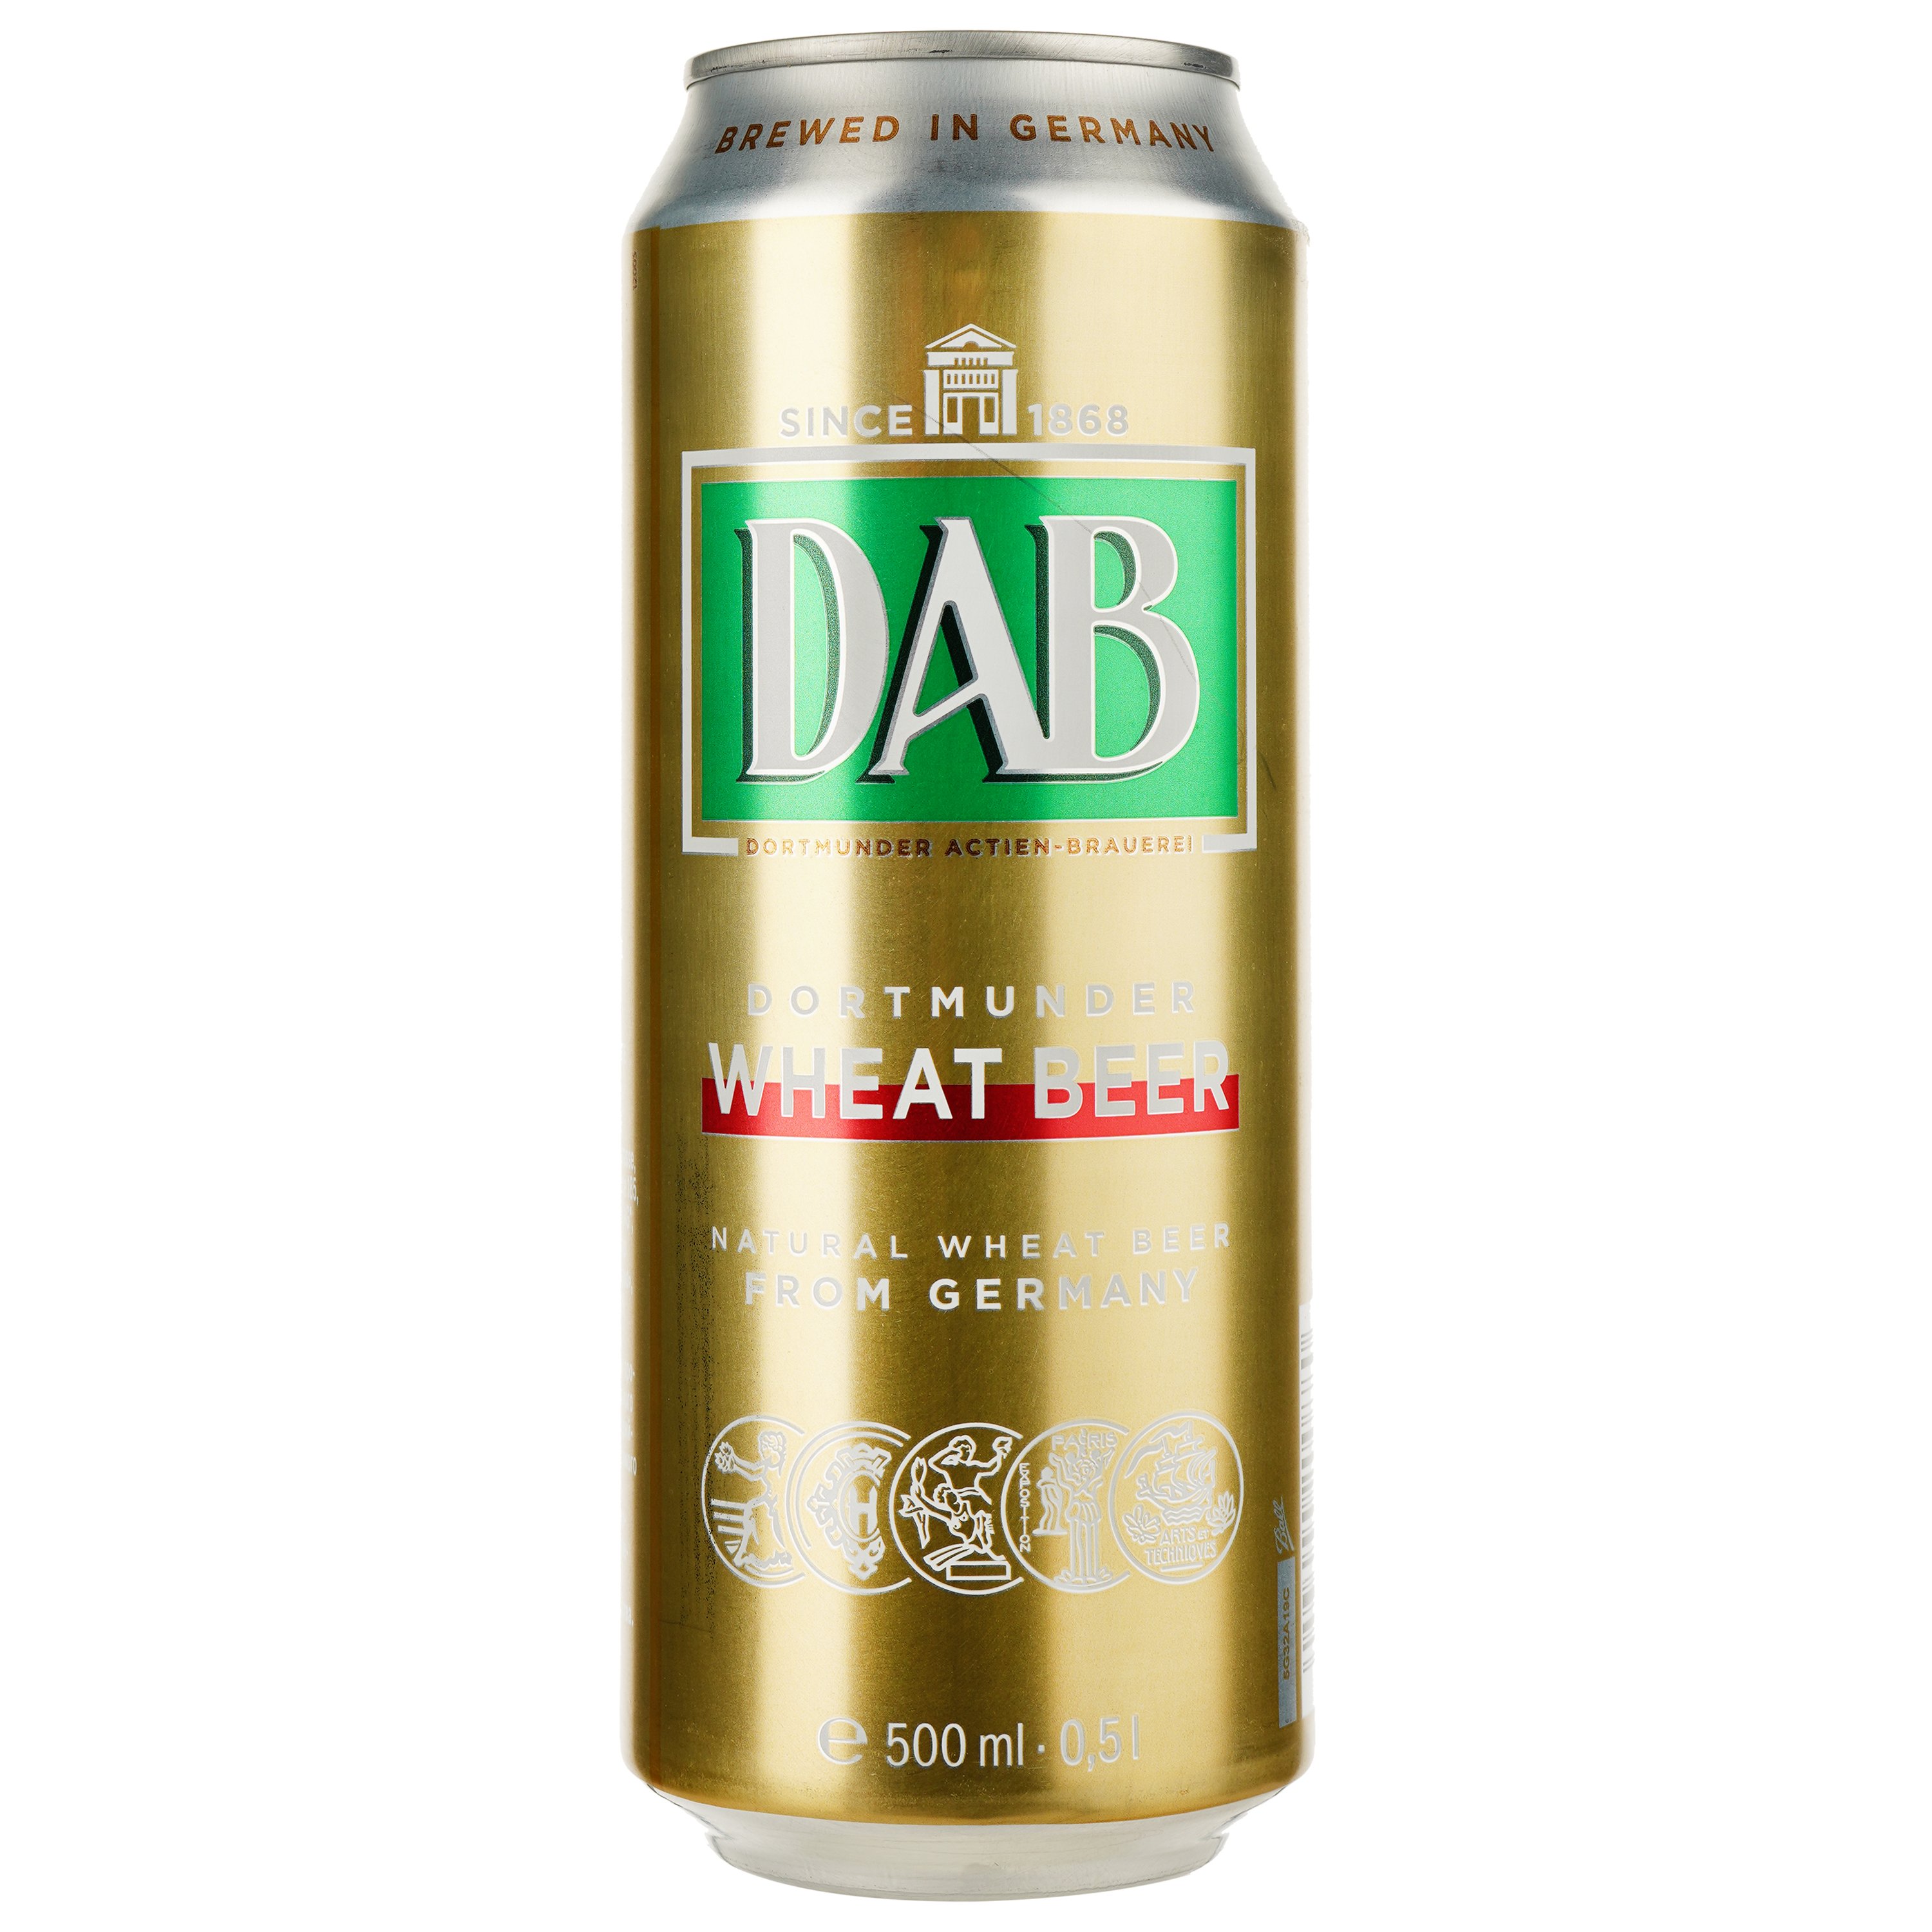 Пиво DAB Wheat Beer, светлое, нефильтрованное, 4,8%, ж/б, 0,5 л - фото 1